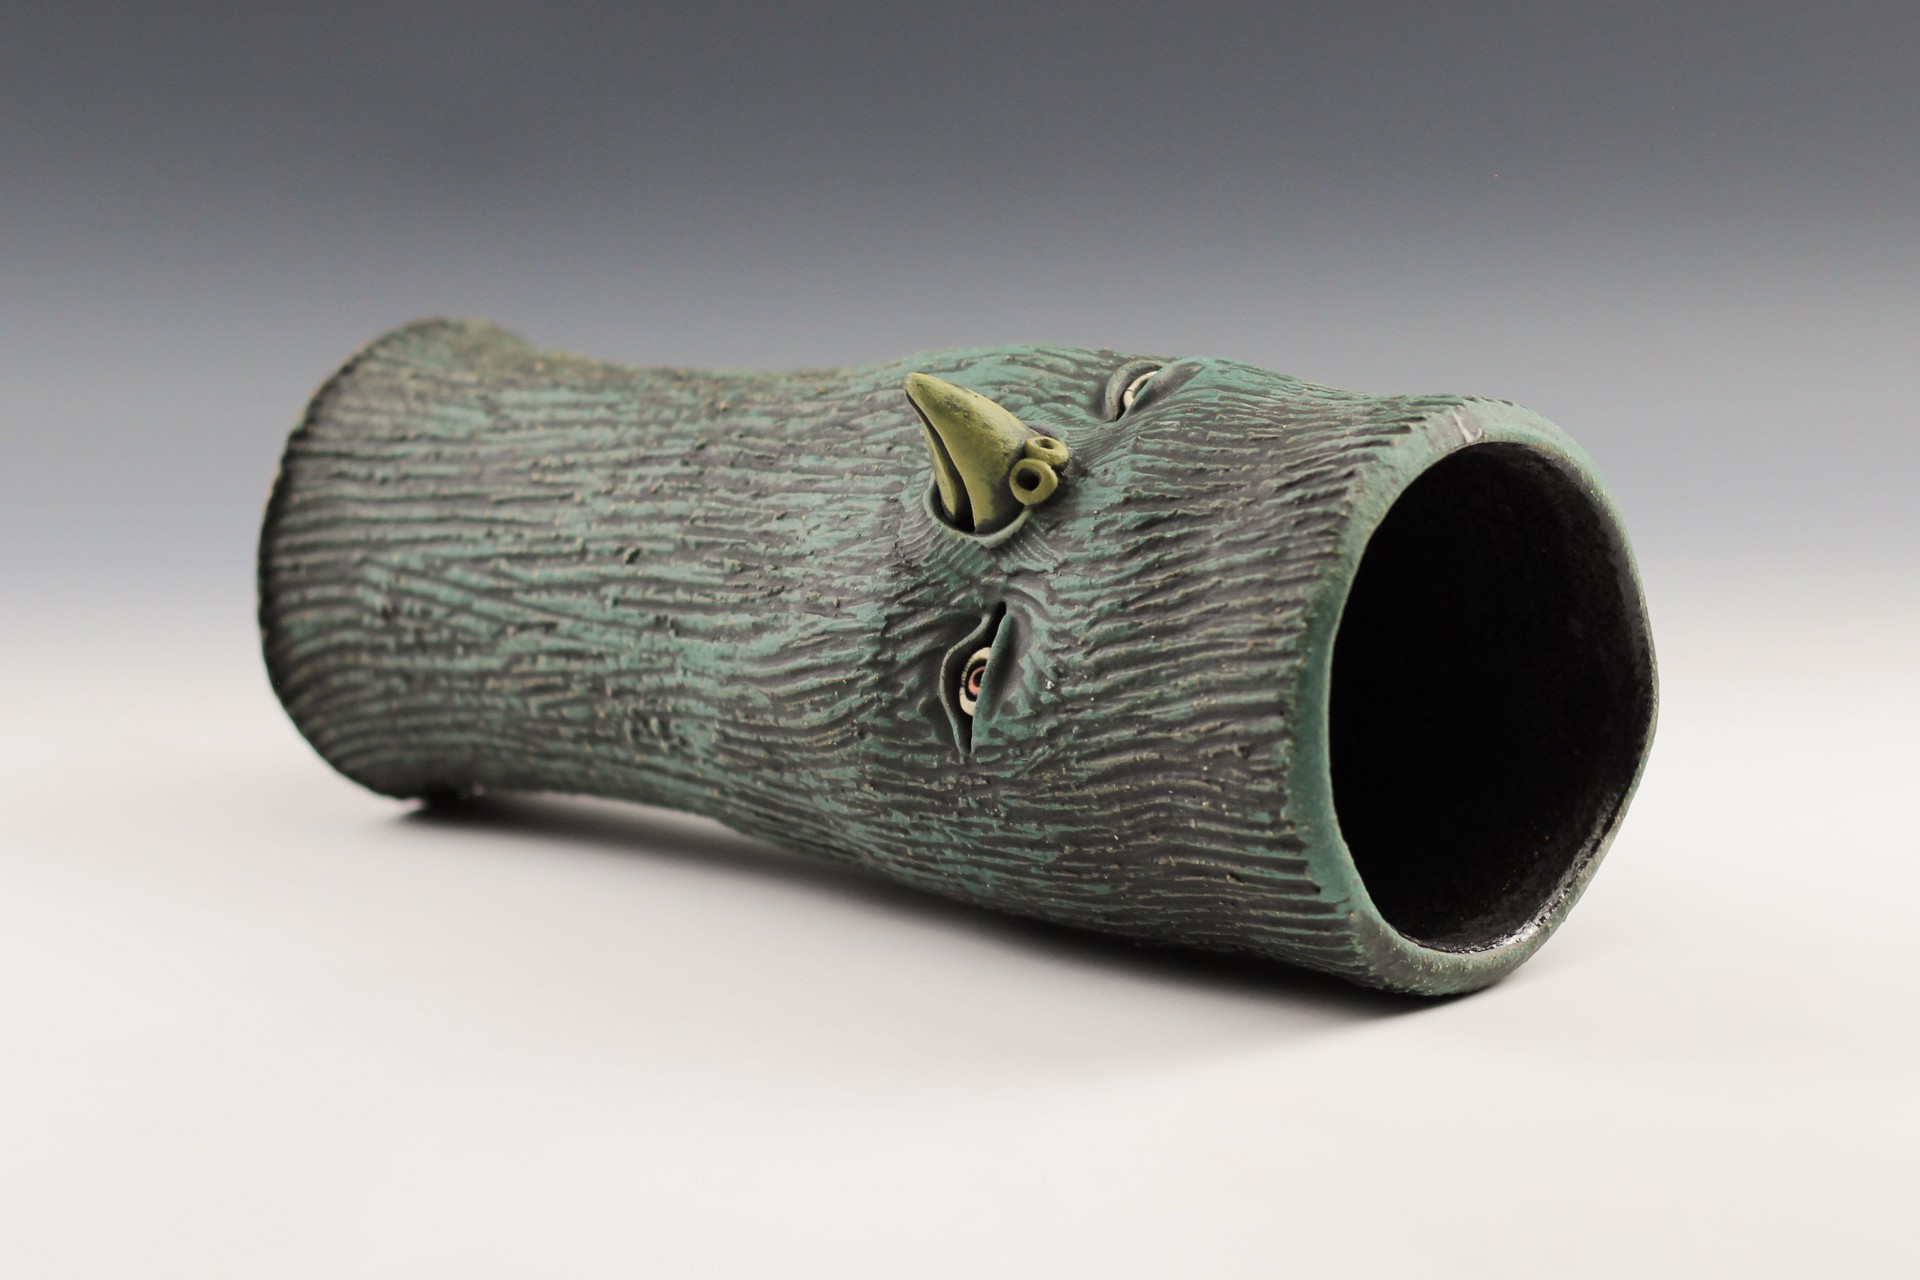 Bird Vase by Ryan Myers